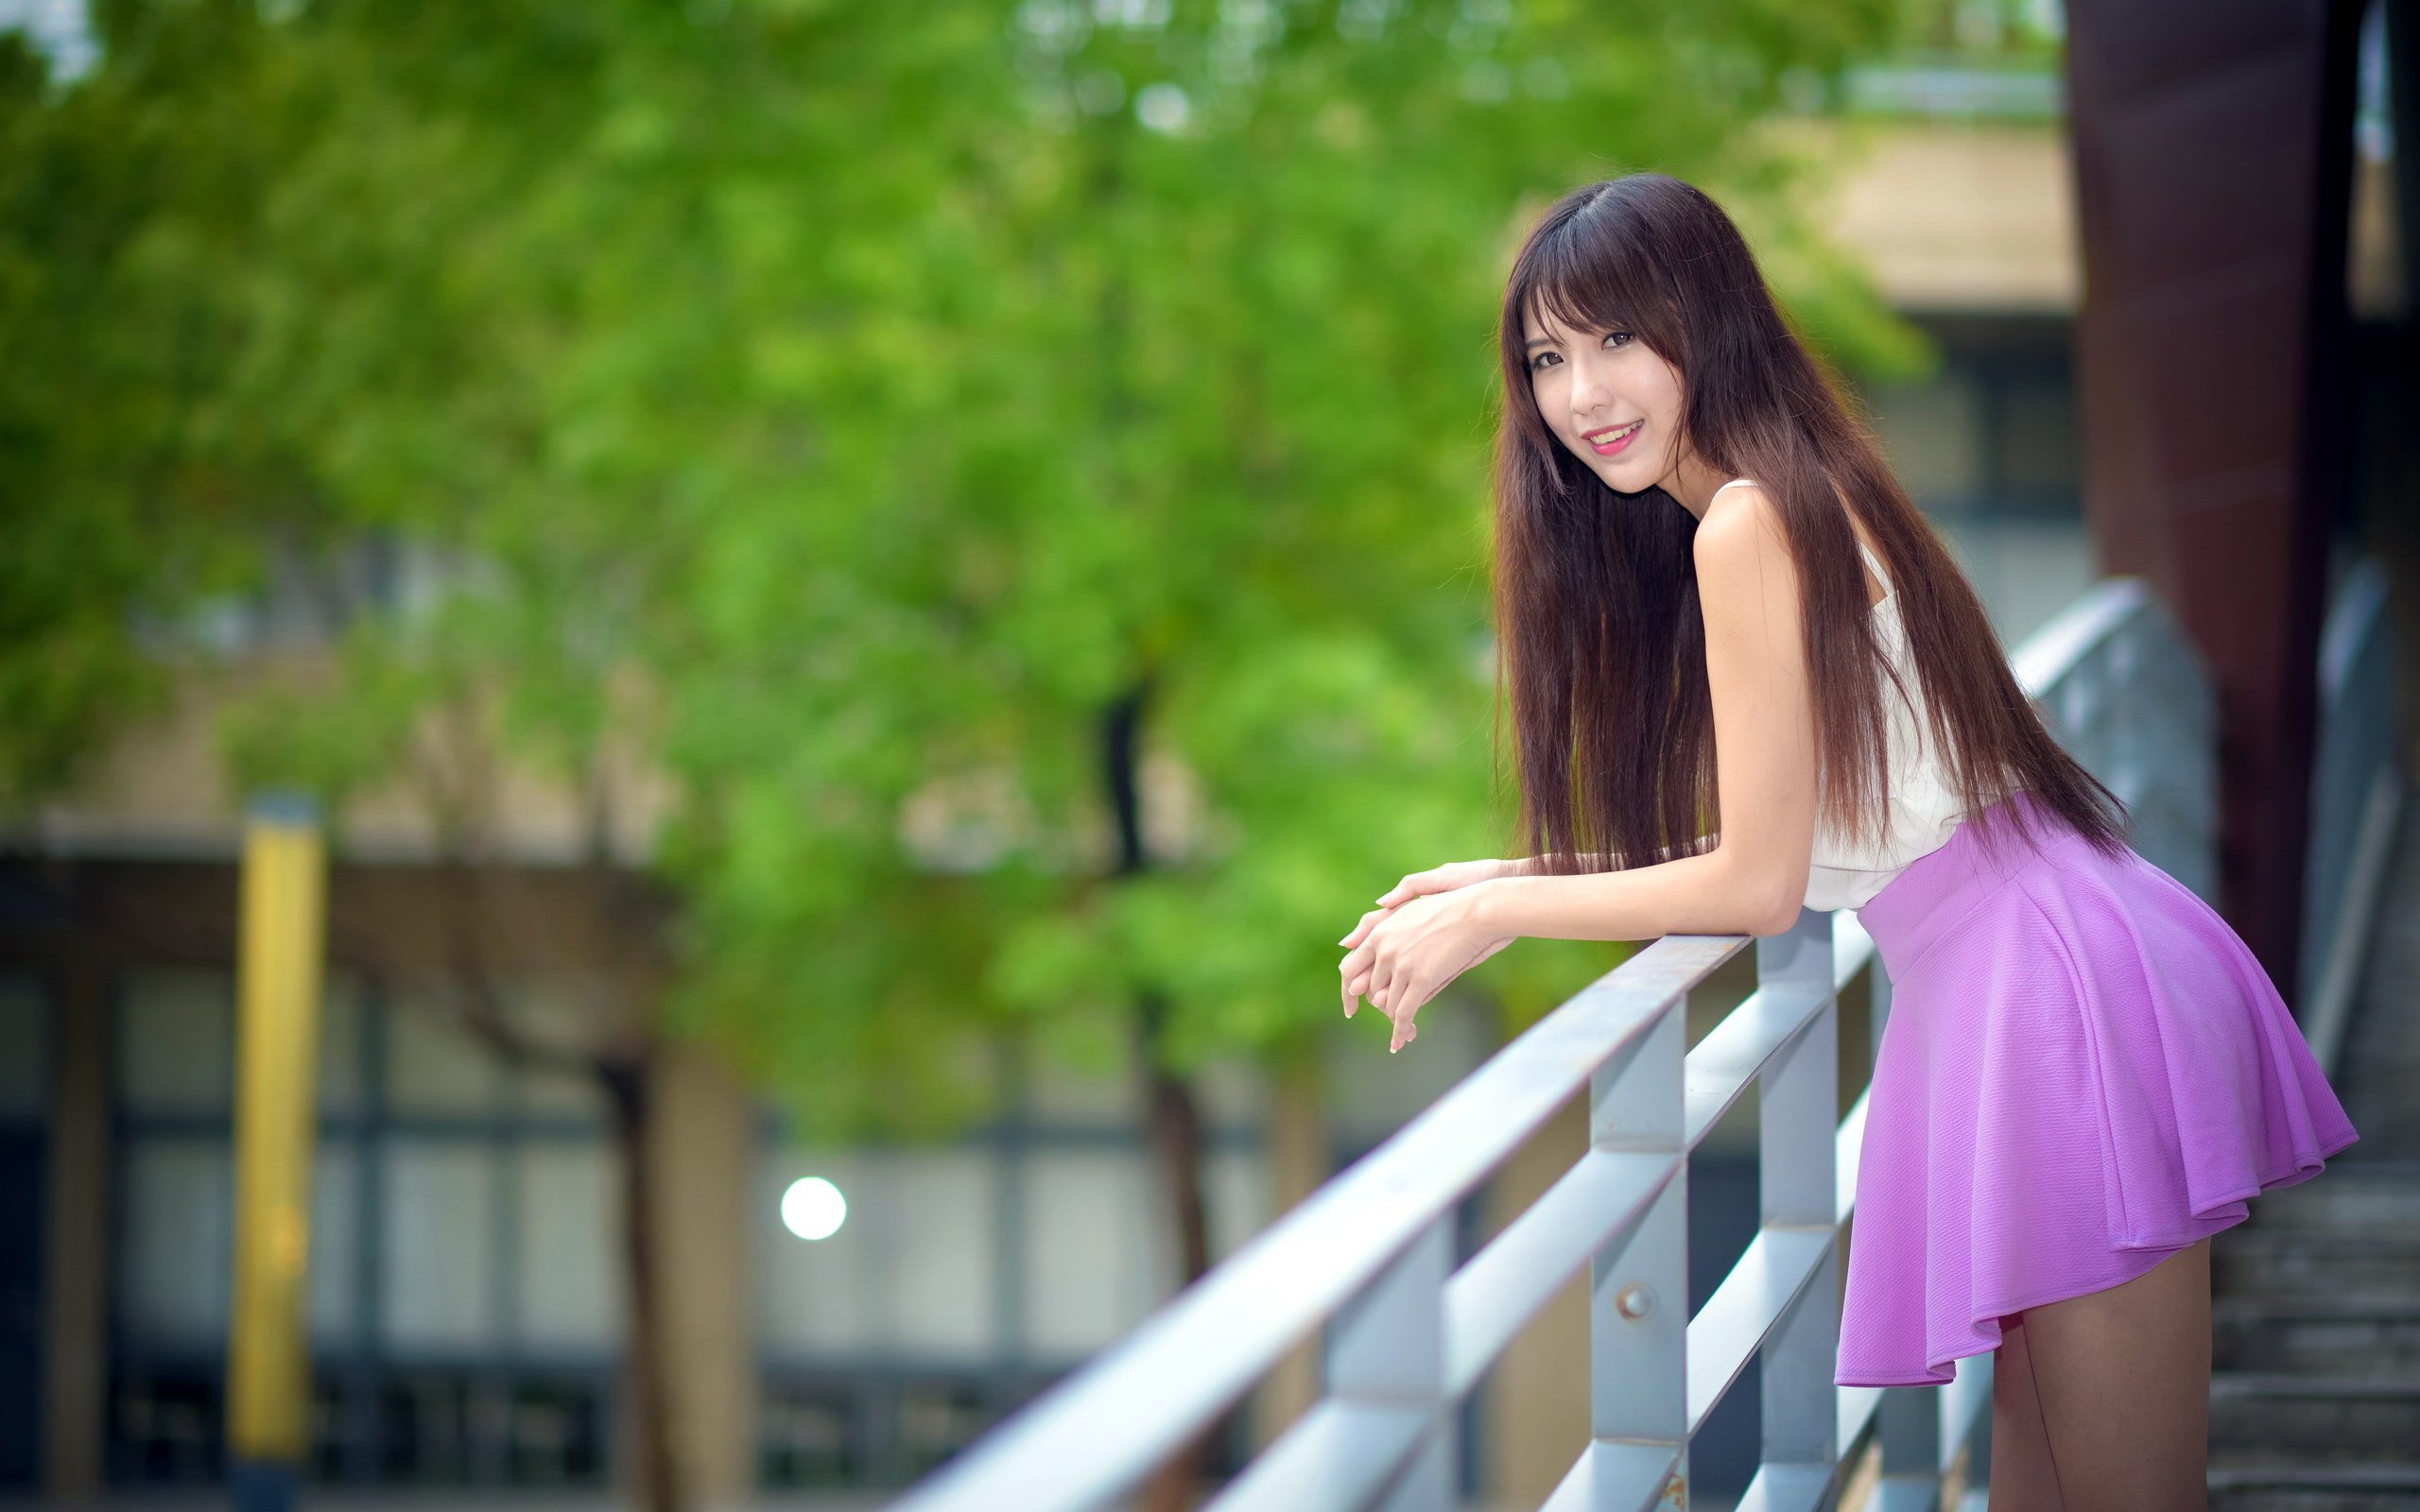 Asian Model Women Long Hair Dark Hair Depth Of Field Skirt White Shirt Leaning Railings Trees